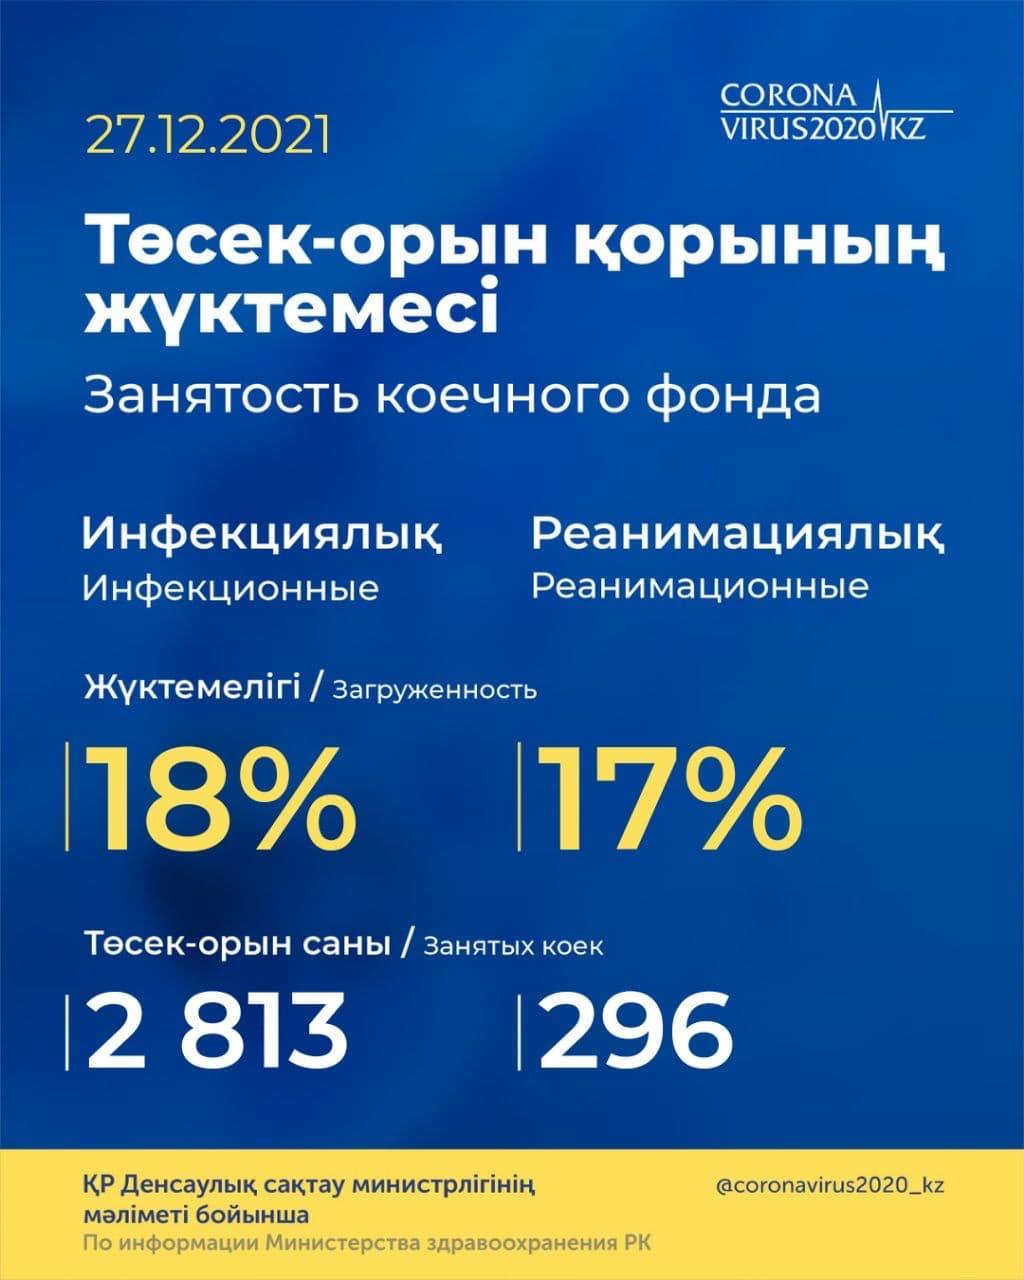 Информация по занятости коечного фонда в РК 27.12.21